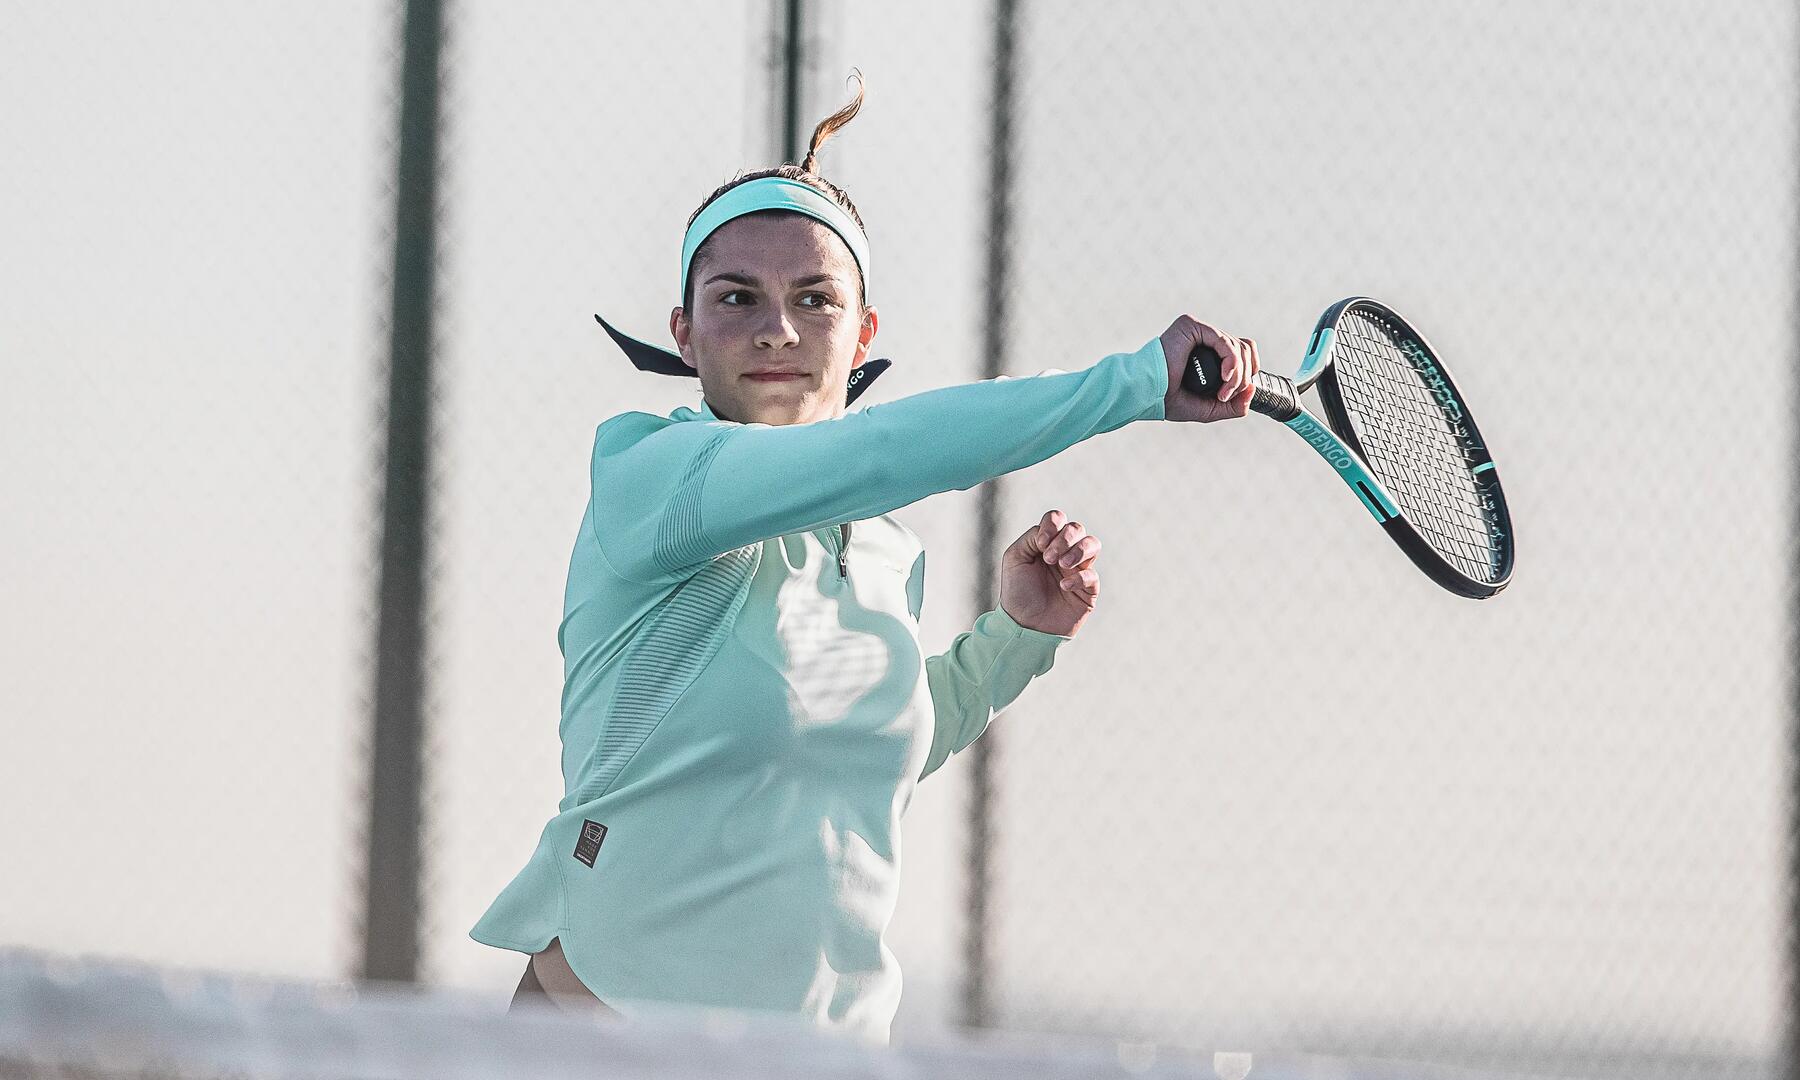 Bild einer Frau, die auf einem Feld Tennis spielt